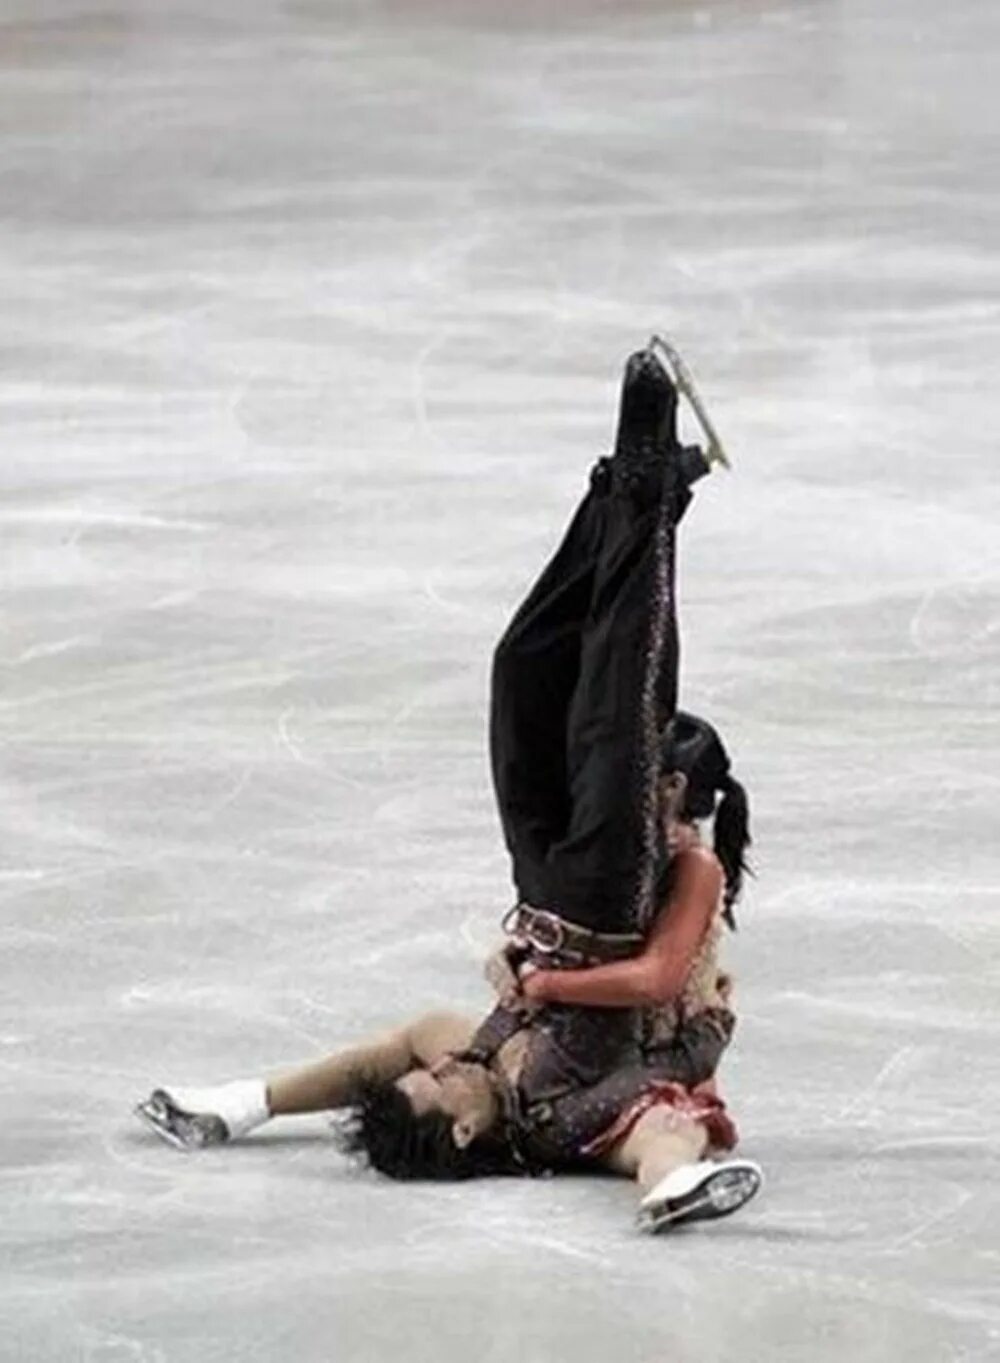 Затылком об лед. Падения в фигурном катании. Смешные падения фигуристов. Упал на коньках. Катание на льду.